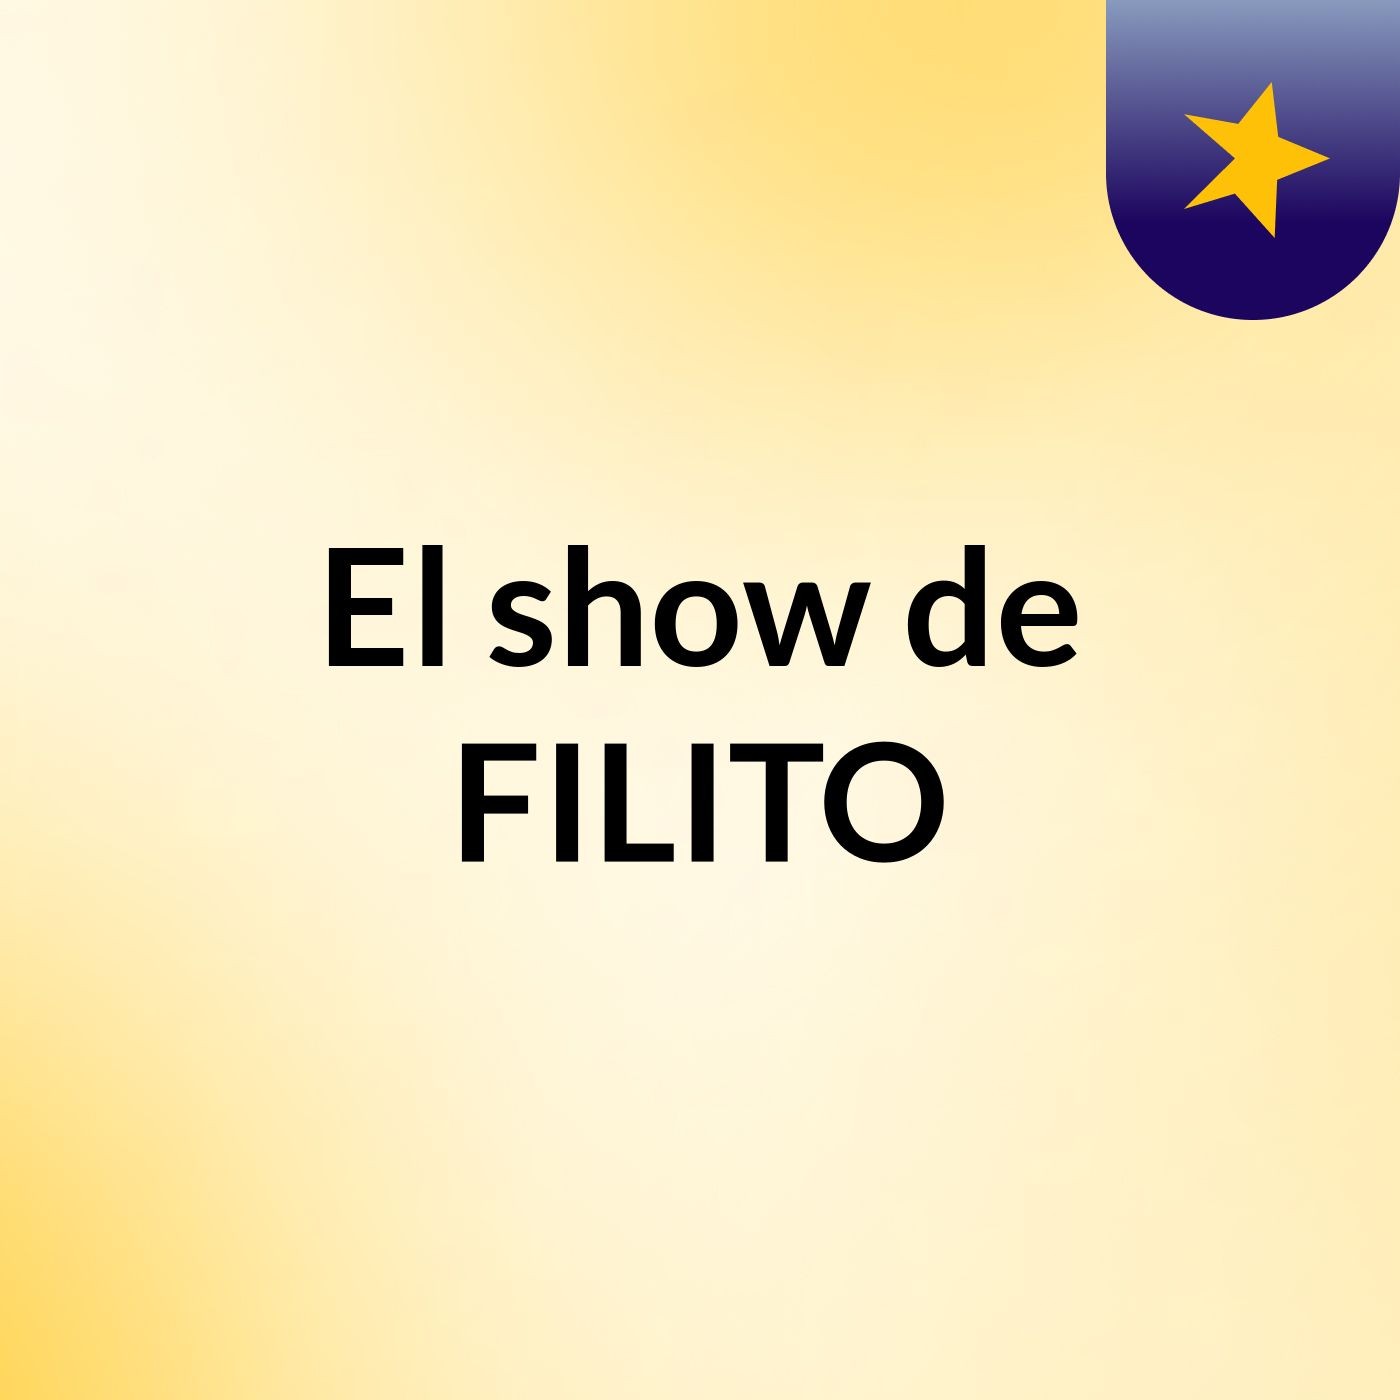 El show de FILITO